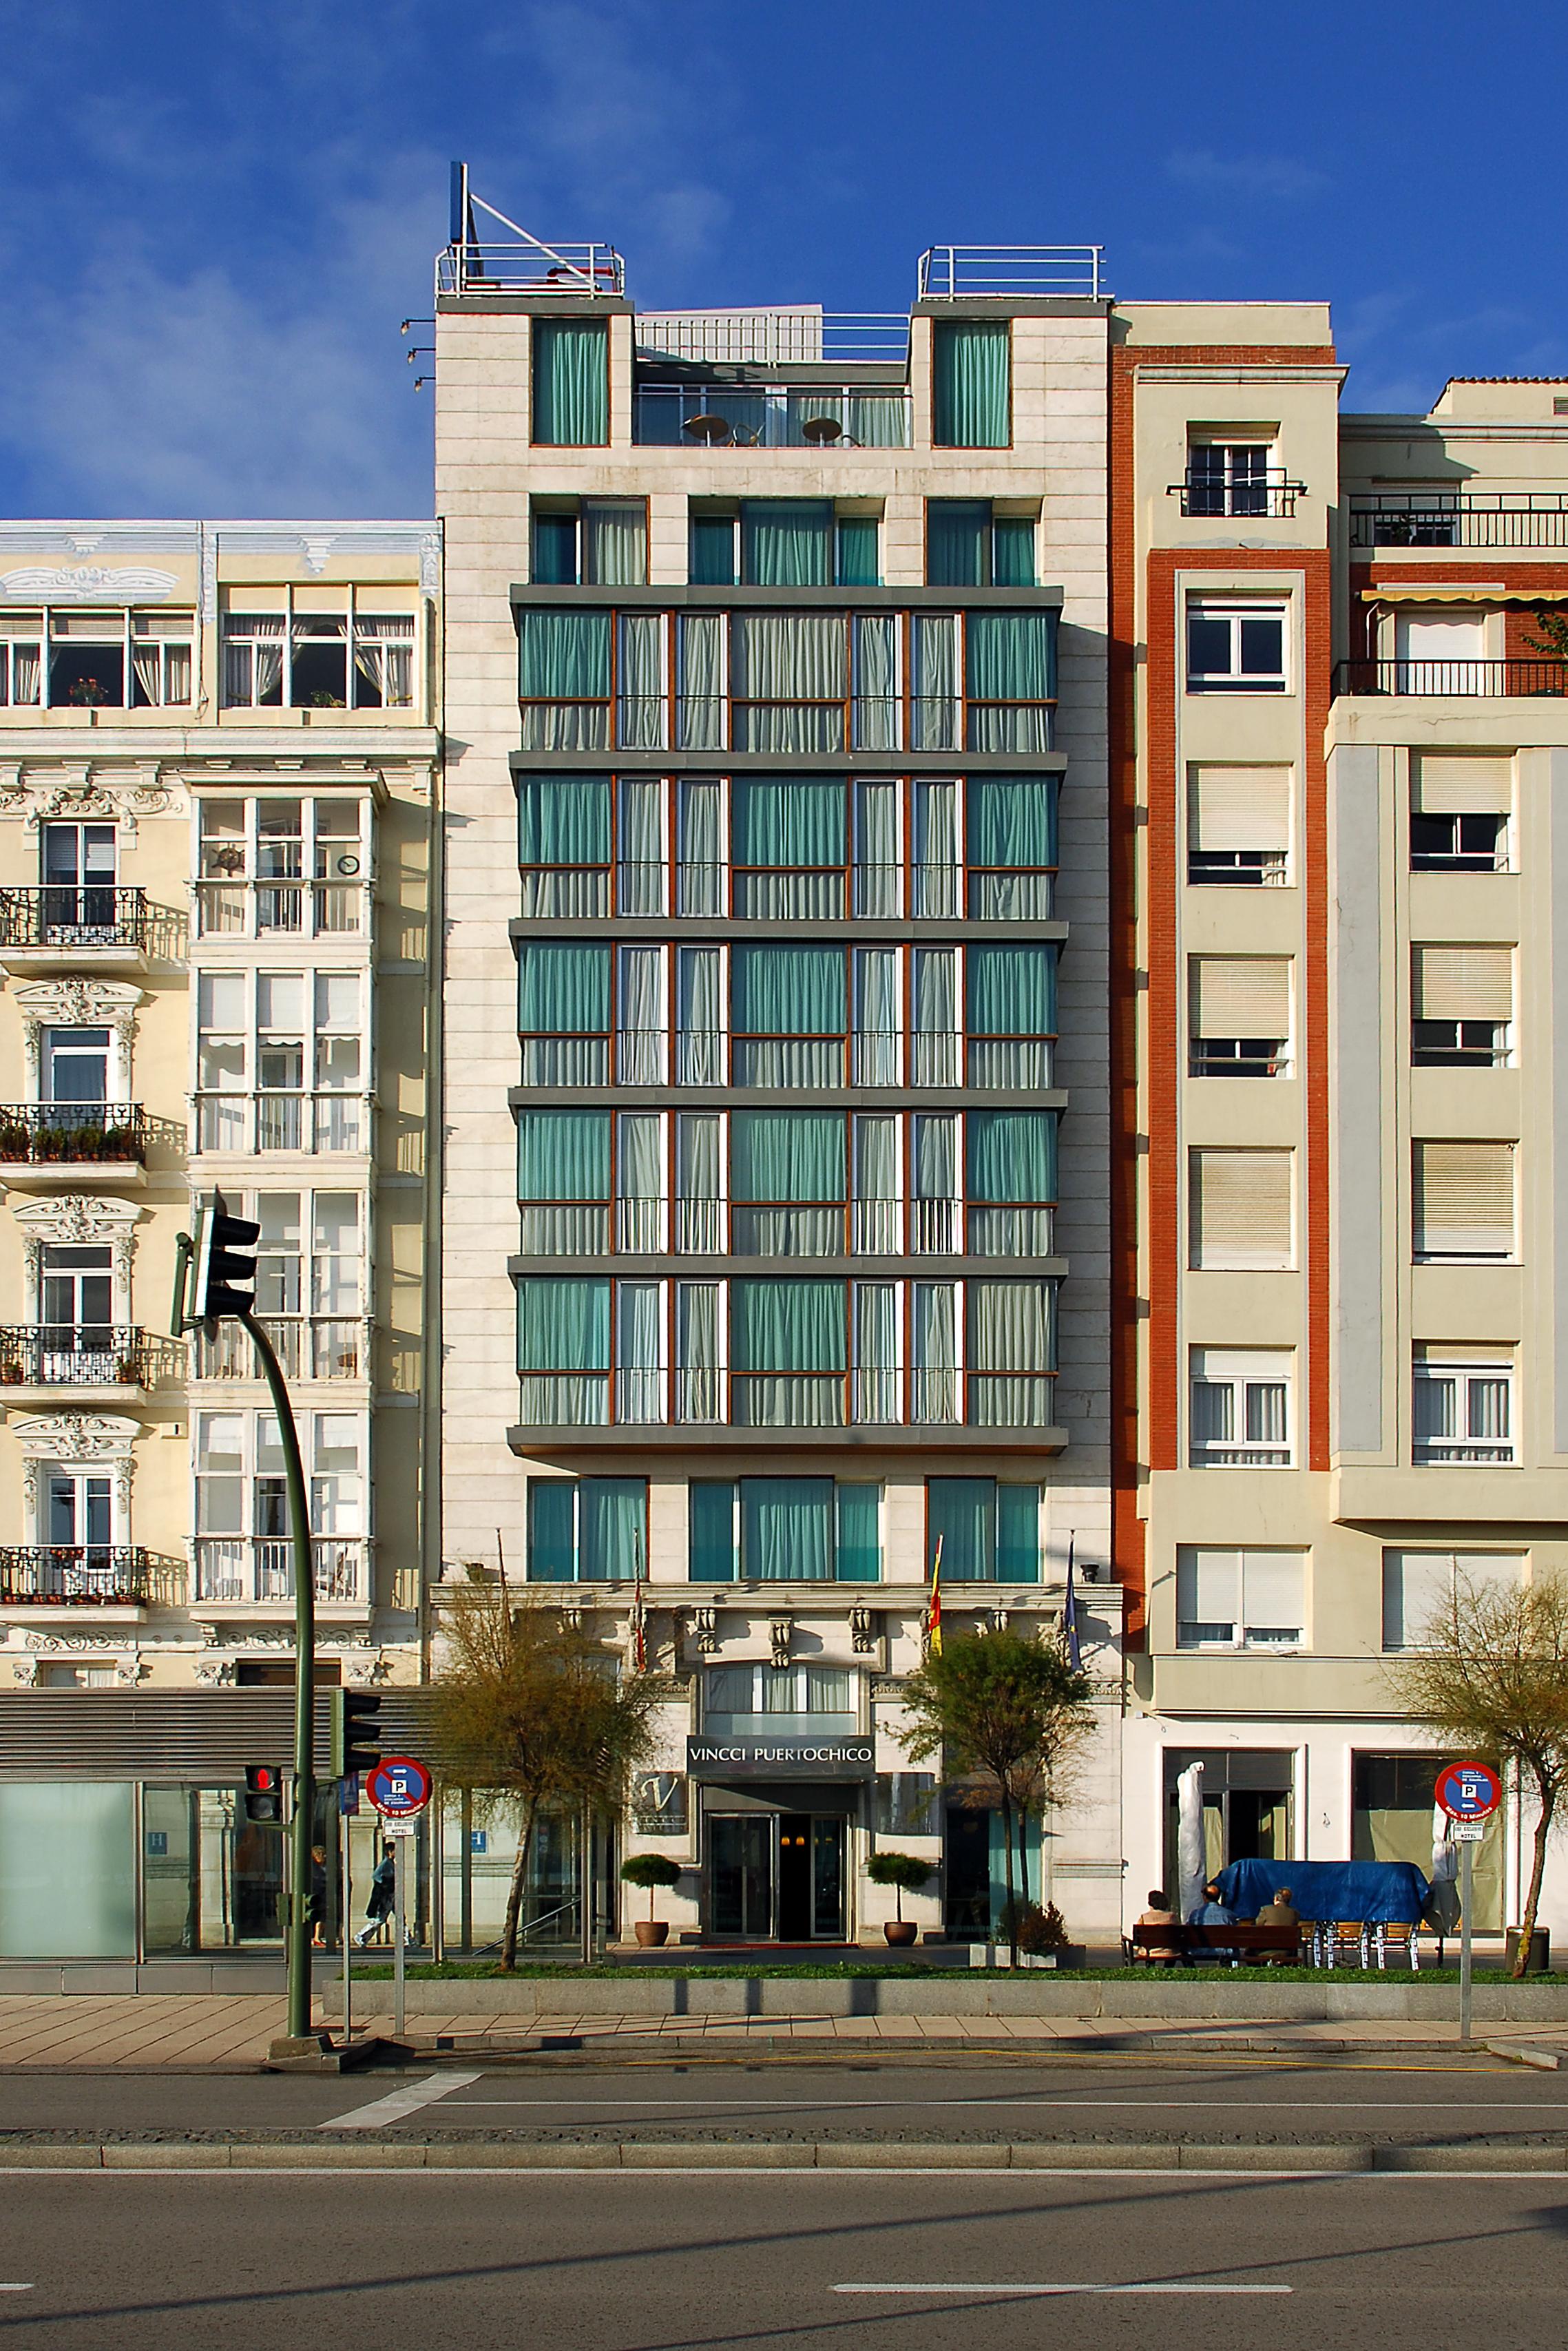 Vincci Puertochico Hotel Santander Exterior photo